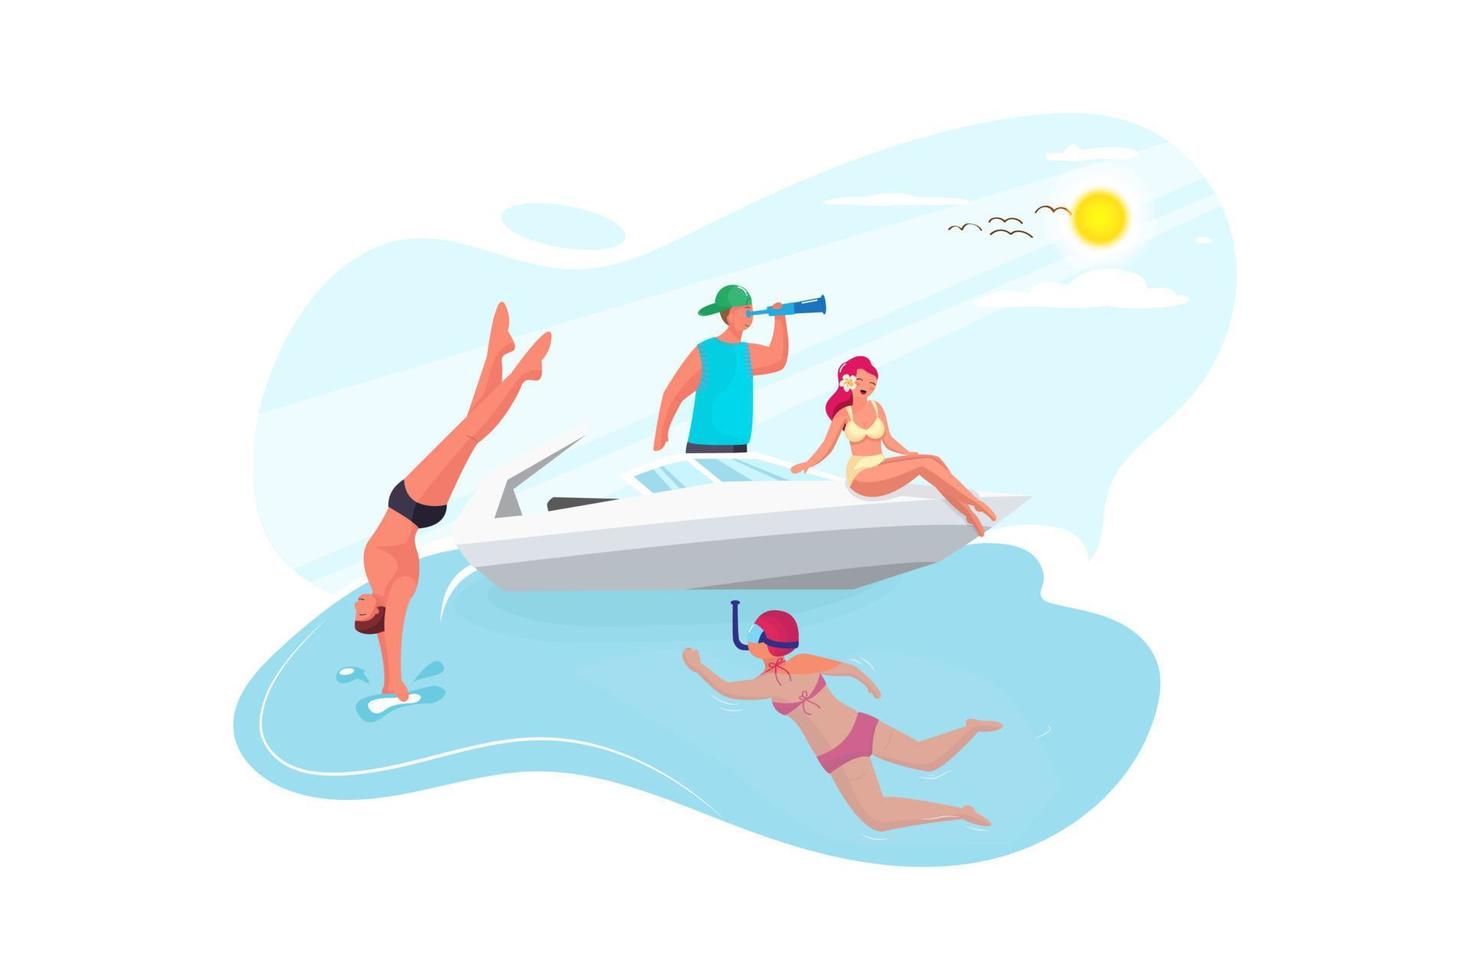 gelukkige vrienden duiken van zeilboot in zee - jonge mensen springen in de oceaan op zomerexcursiedag vector